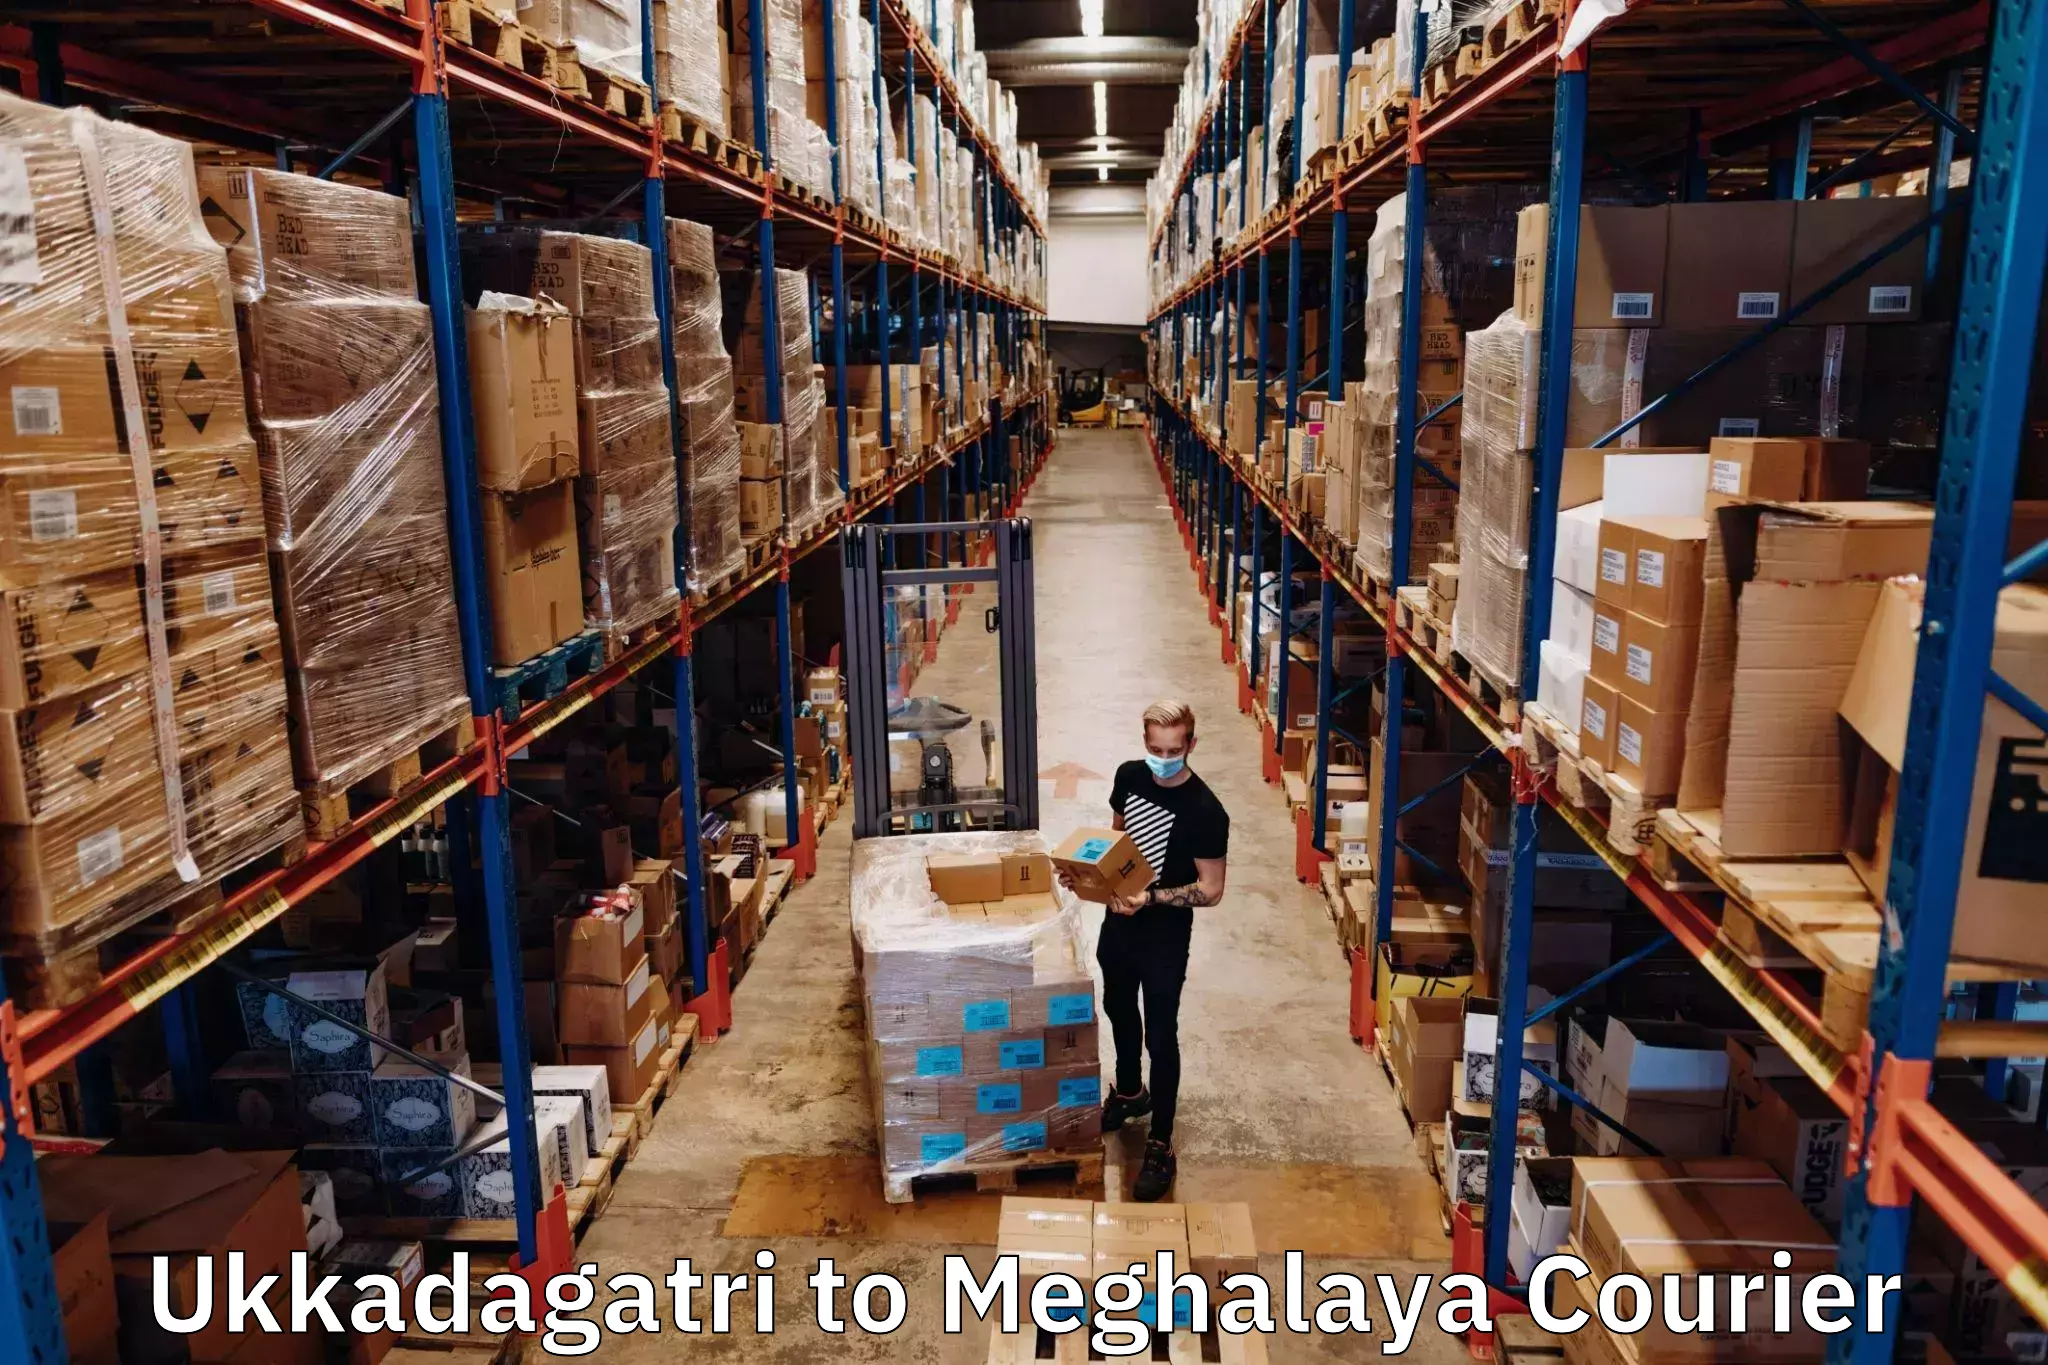 Subscription-based courier Ukkadagatri to Meghalaya